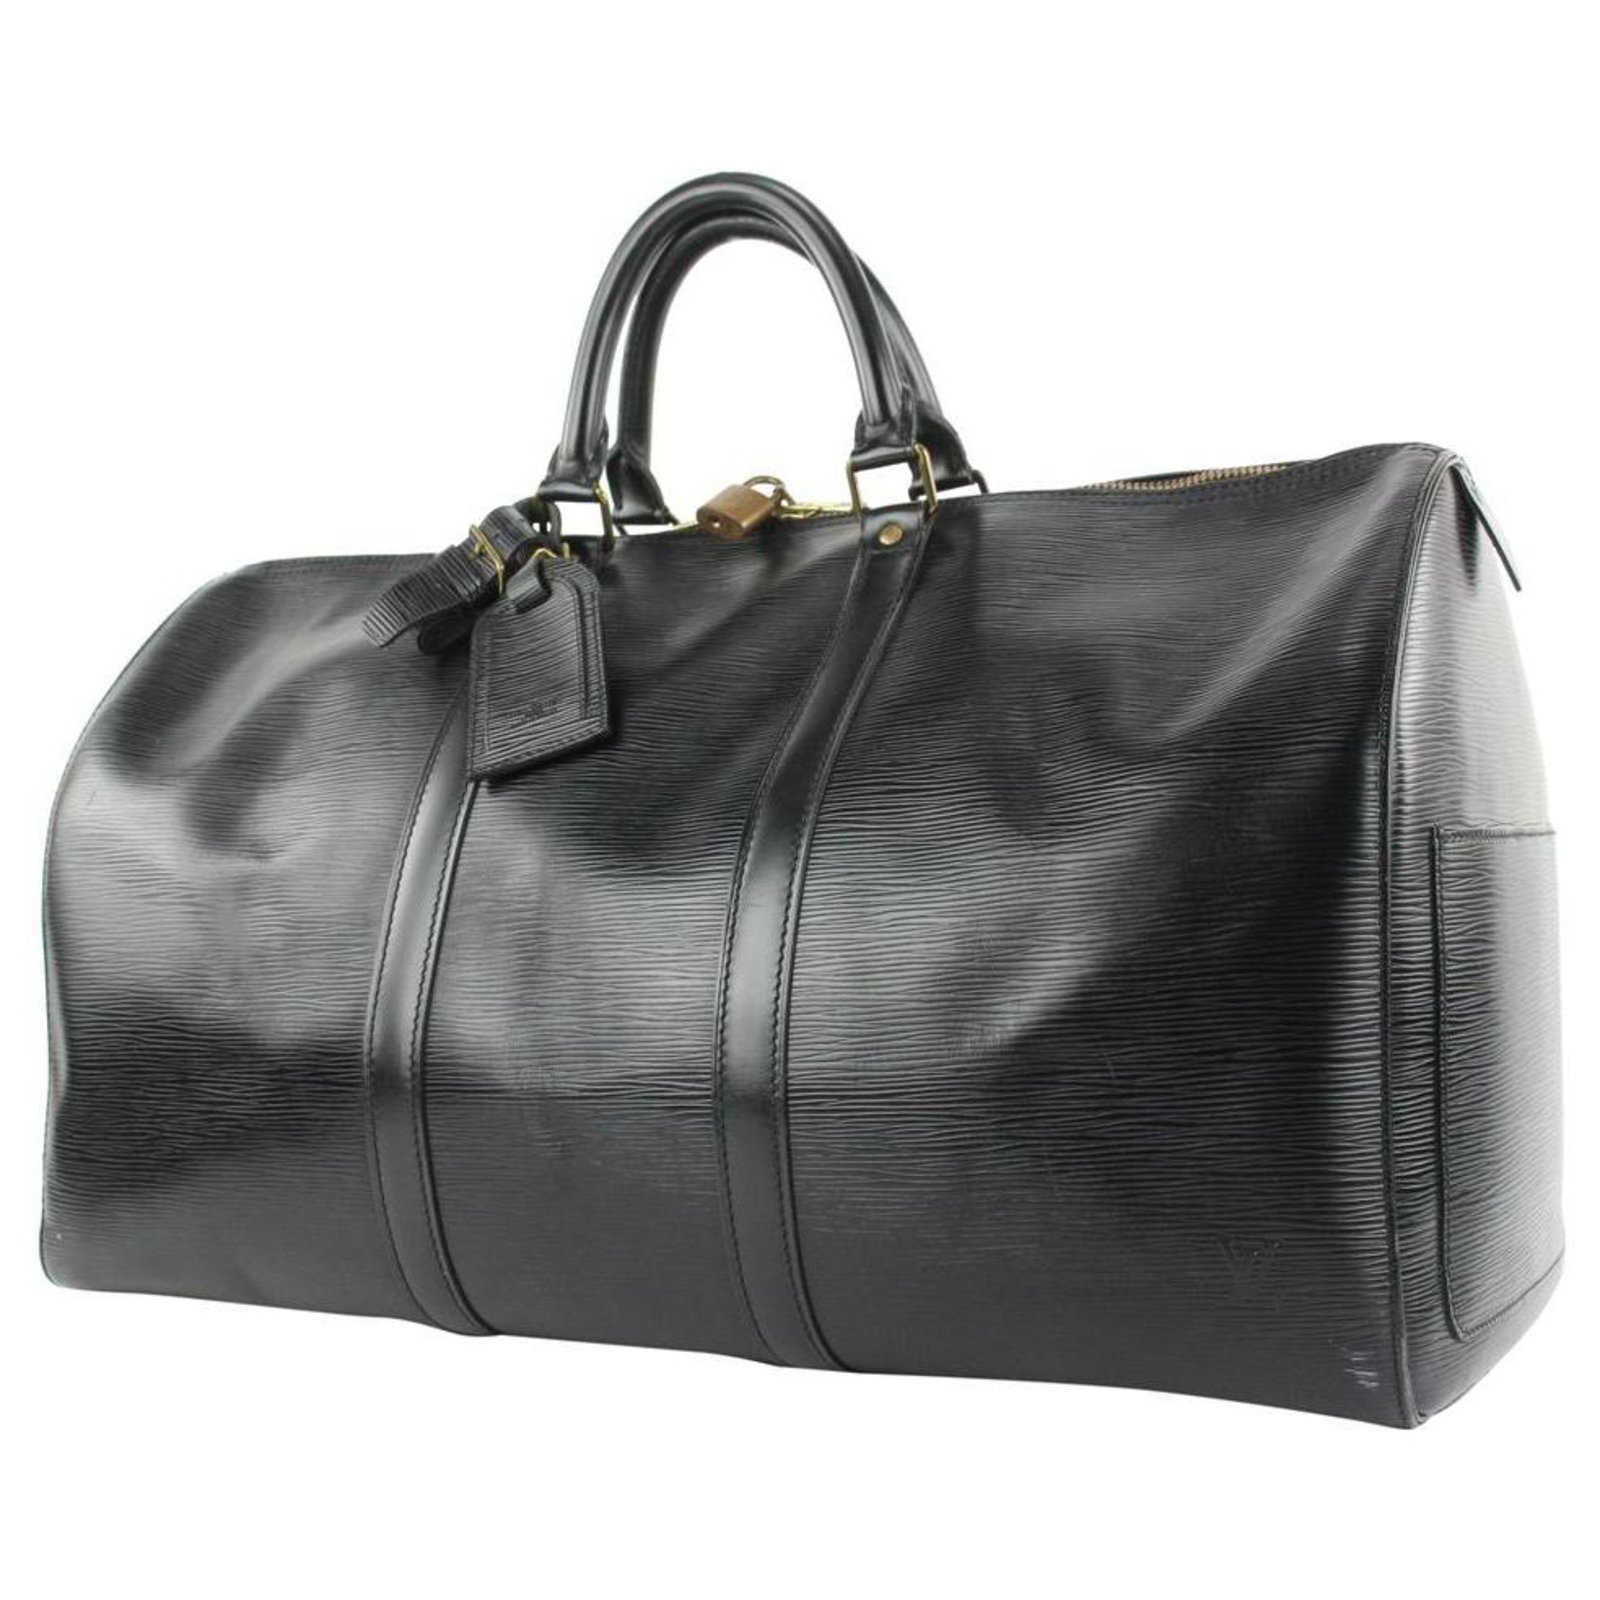 LOUIS VUITTON Epi Leather Black Keepall 45 Boston Bag